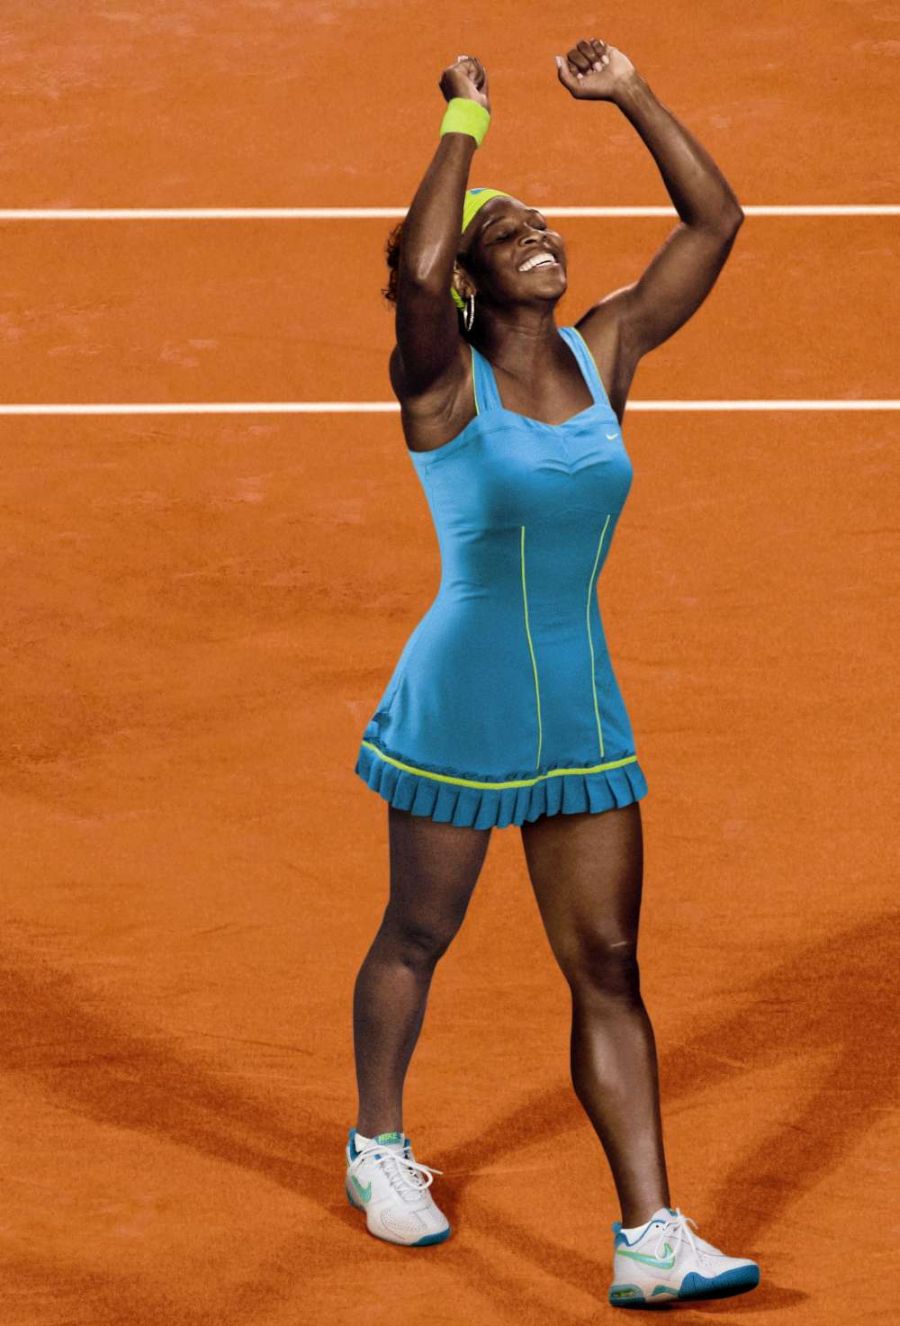 Wimbledon: Serena Williams - "Radwańska gra bardzo dobrze"